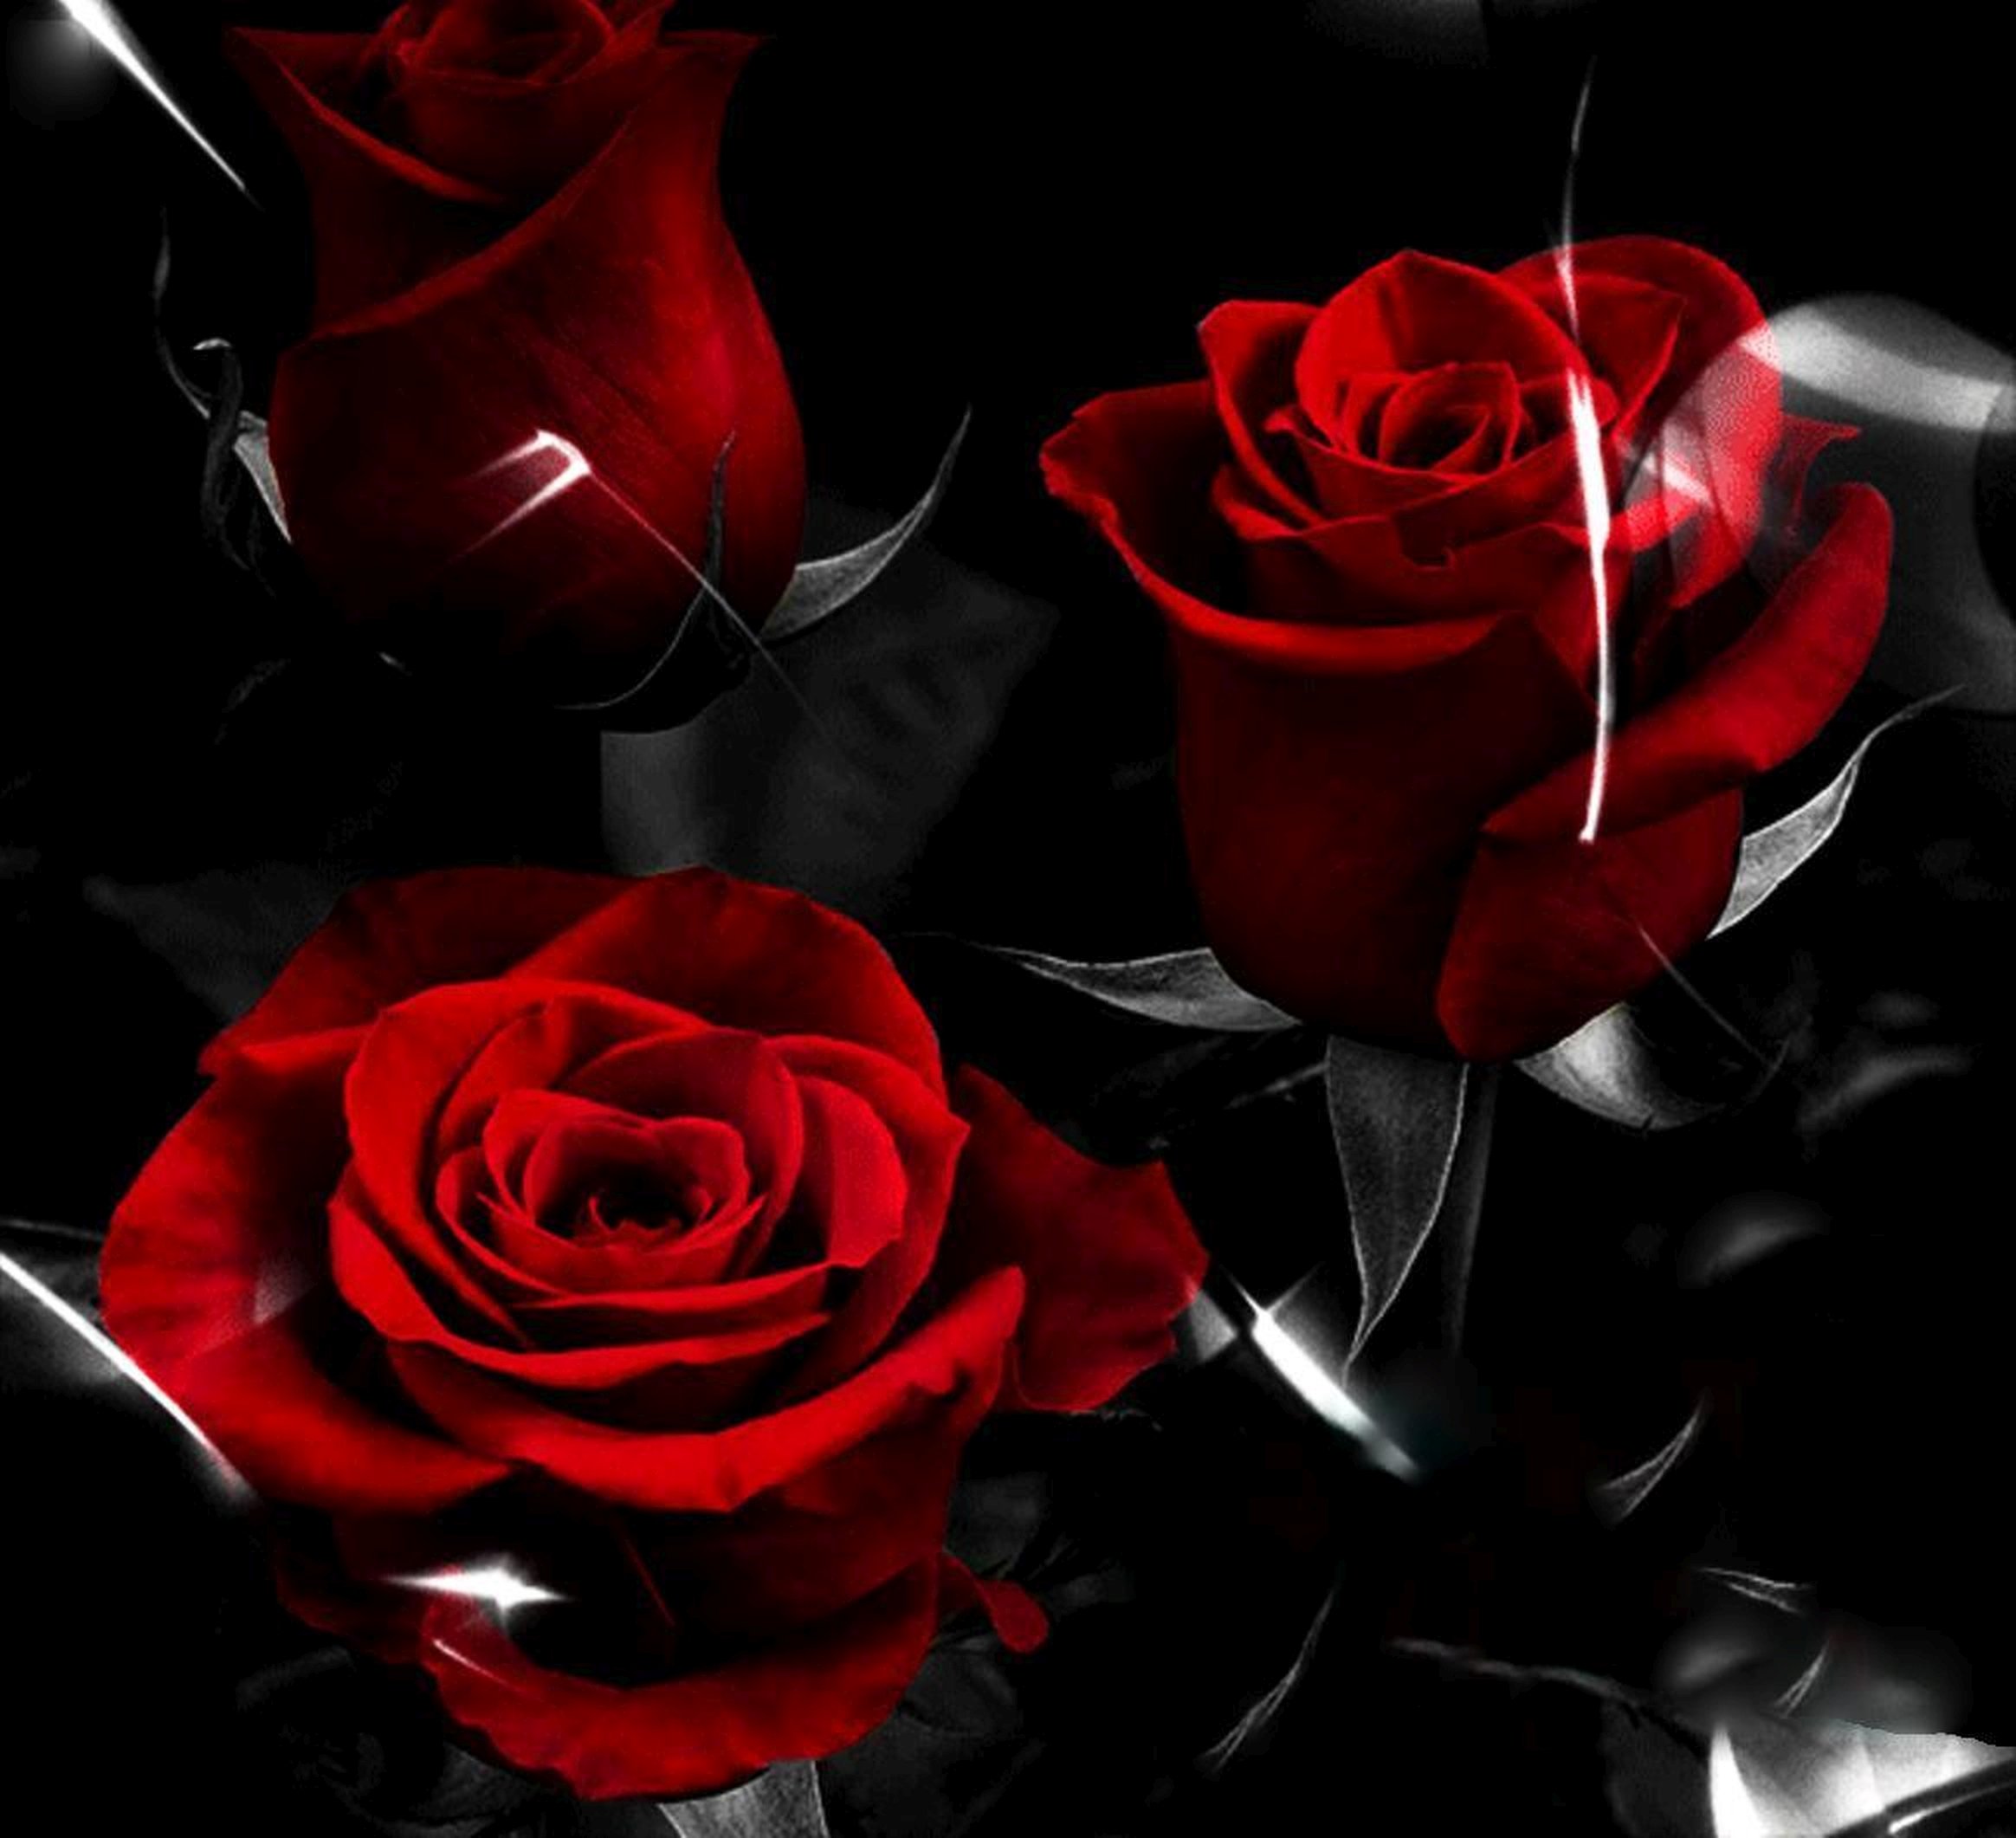 спокойной ночи картинки с розами розовые